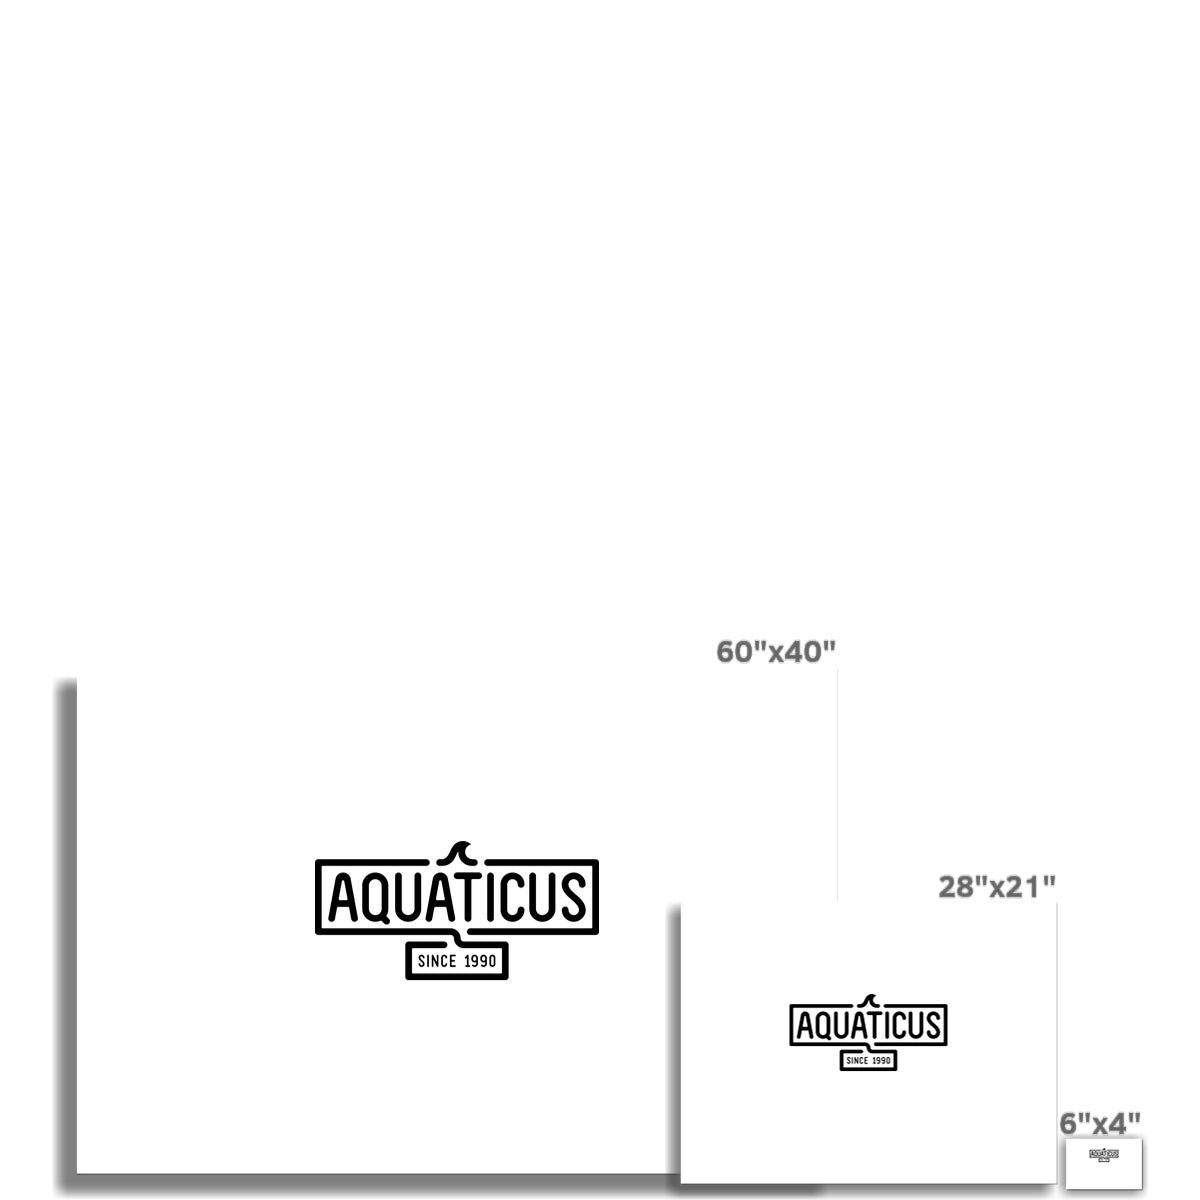 AQUA - 01 - Aquaticus - Wandkunstposter